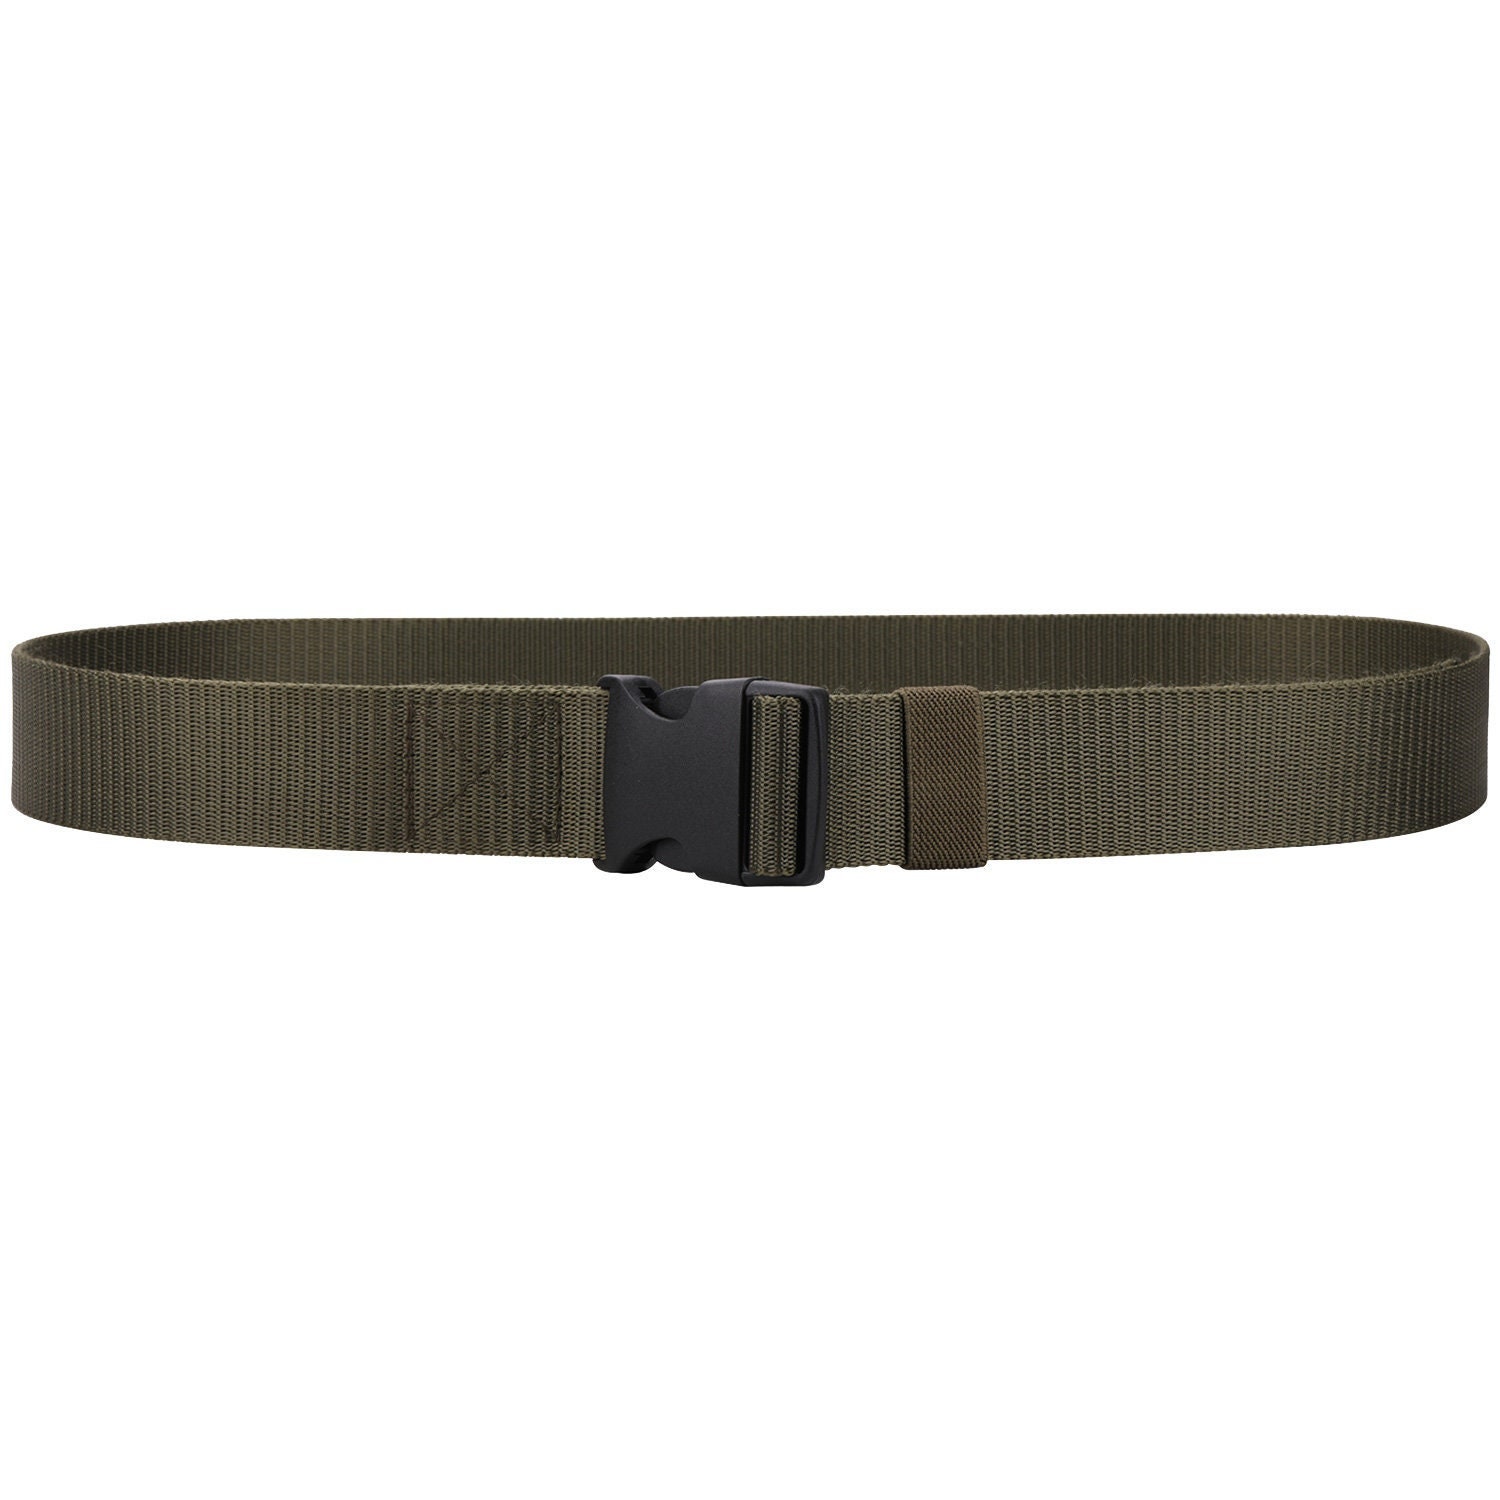 Nylon Military Style Webbing Belt 1.5 Canvas Belt With - Etsy